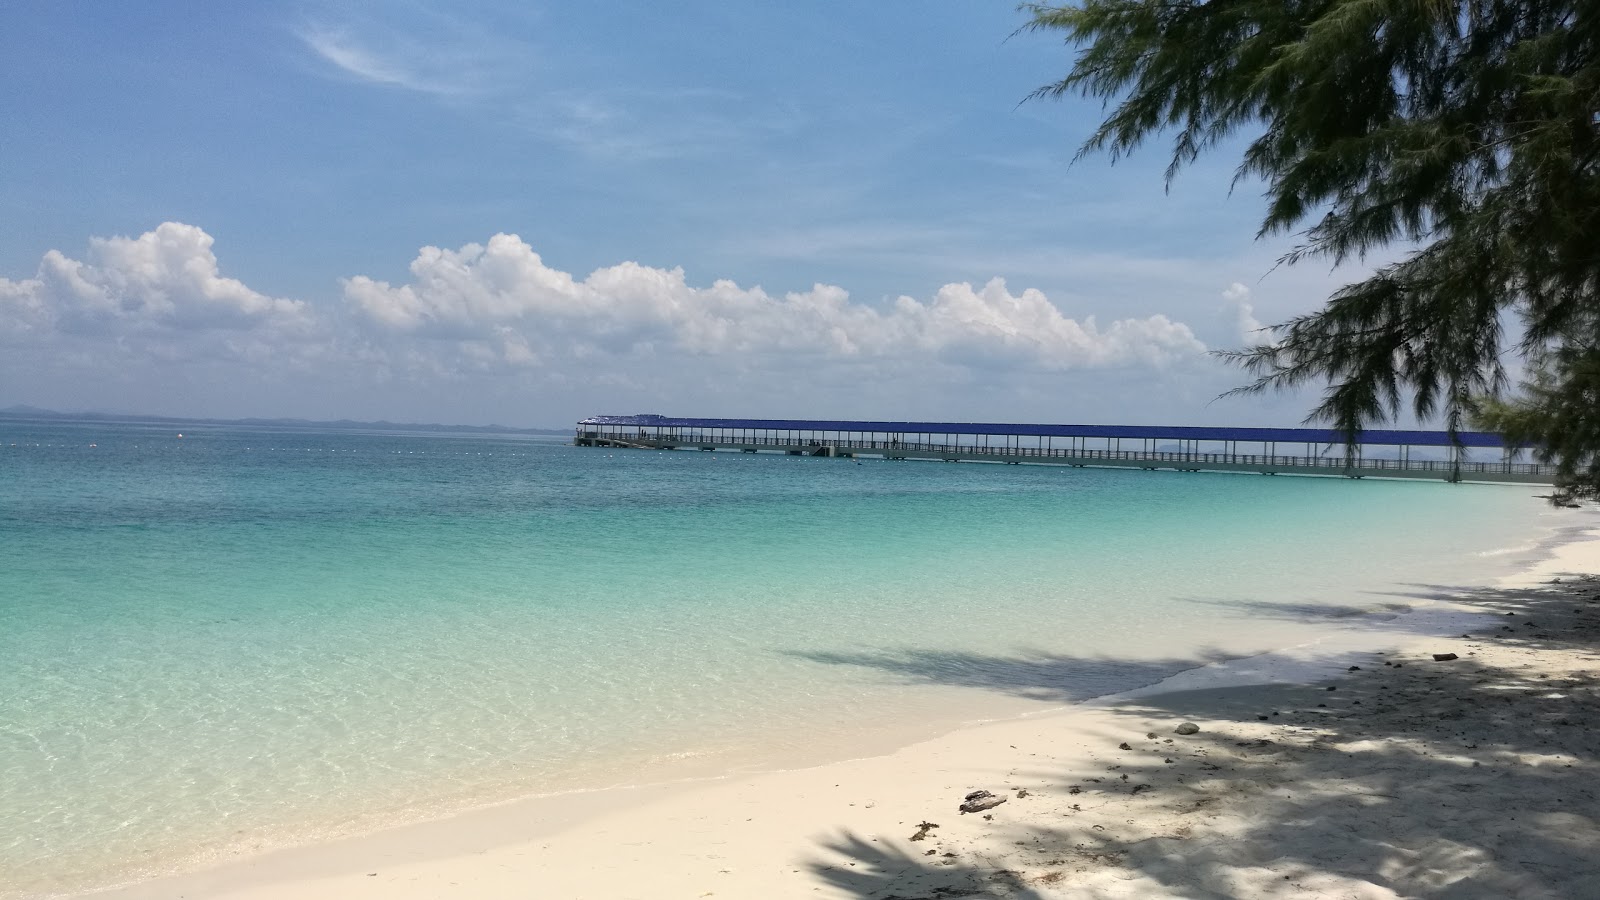 Φωτογραφία του Aseania Beach Resort με μακρά ευθεία ακτή